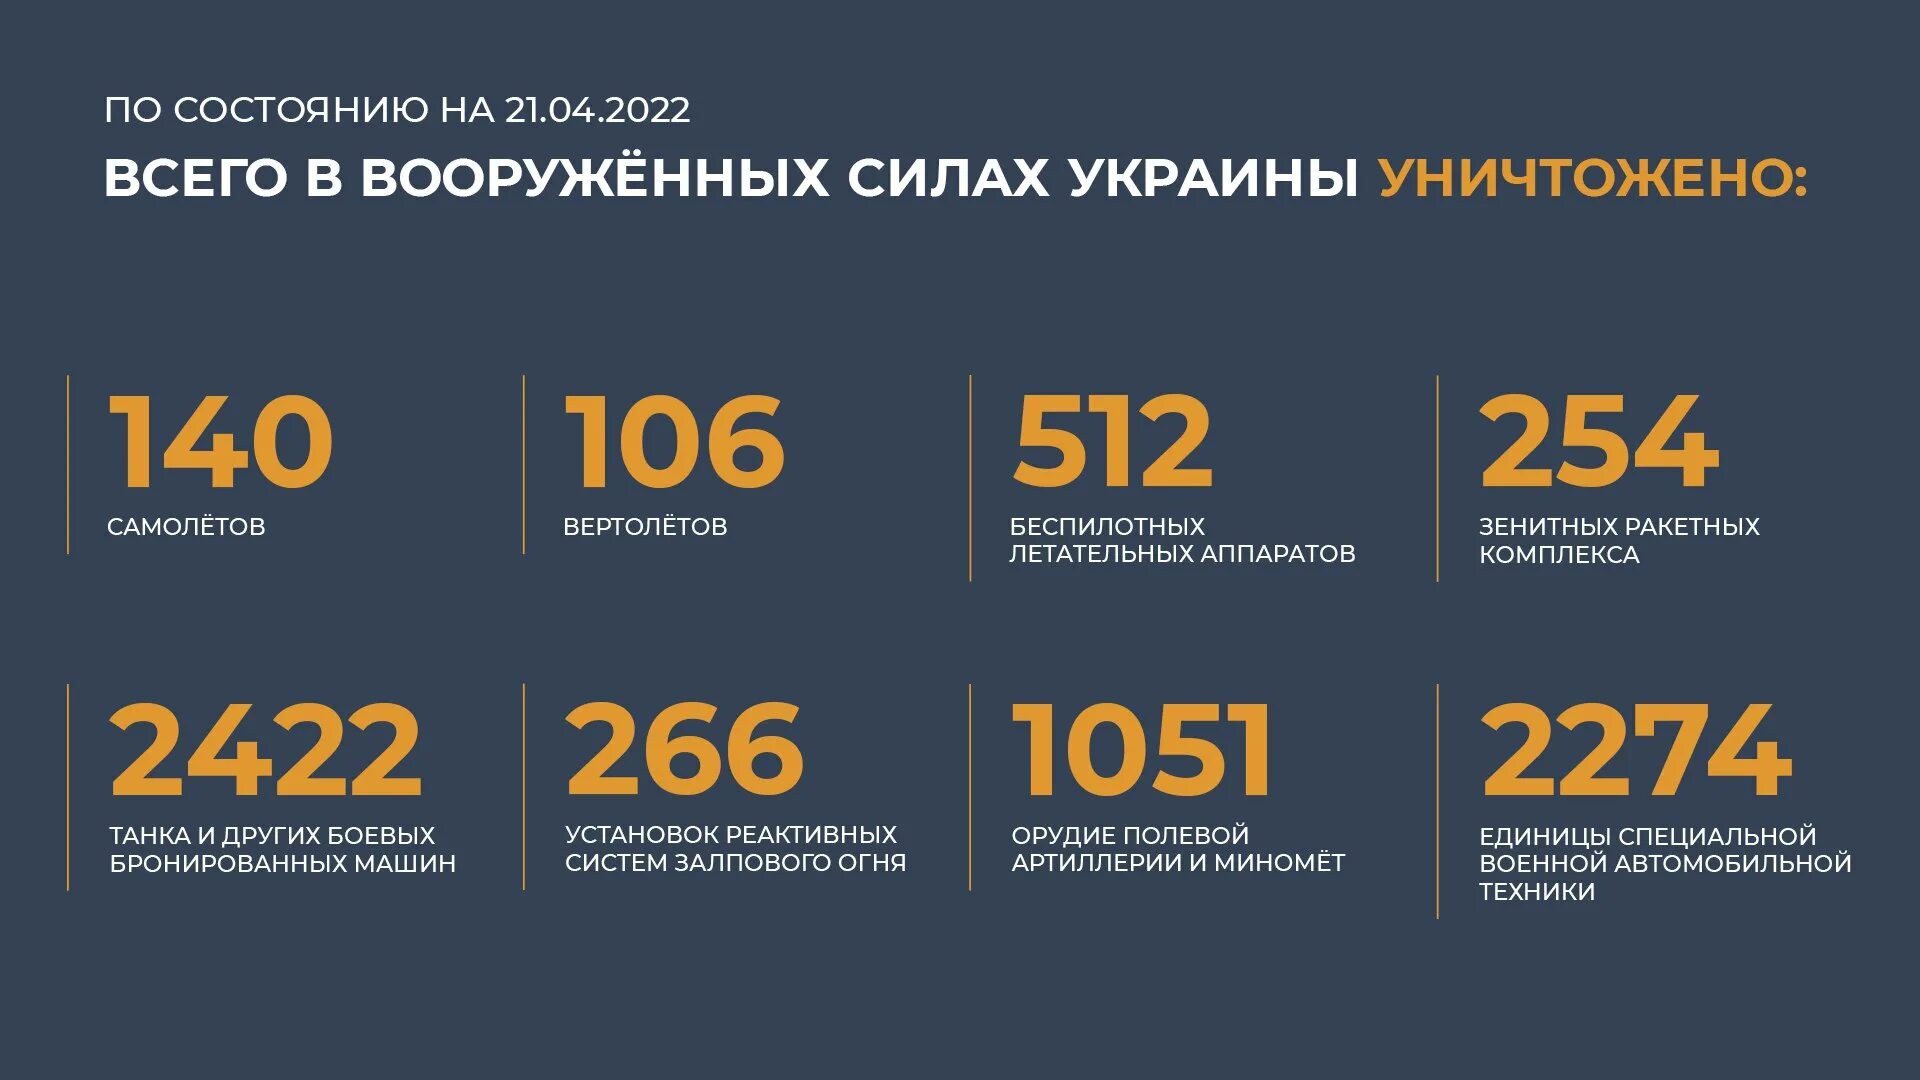 Потери Украины. Потери Украины на сегодня в цифрах. Потери Украины на Украине сегодня 2022. Общие потери России. 21 апреля 2021 г